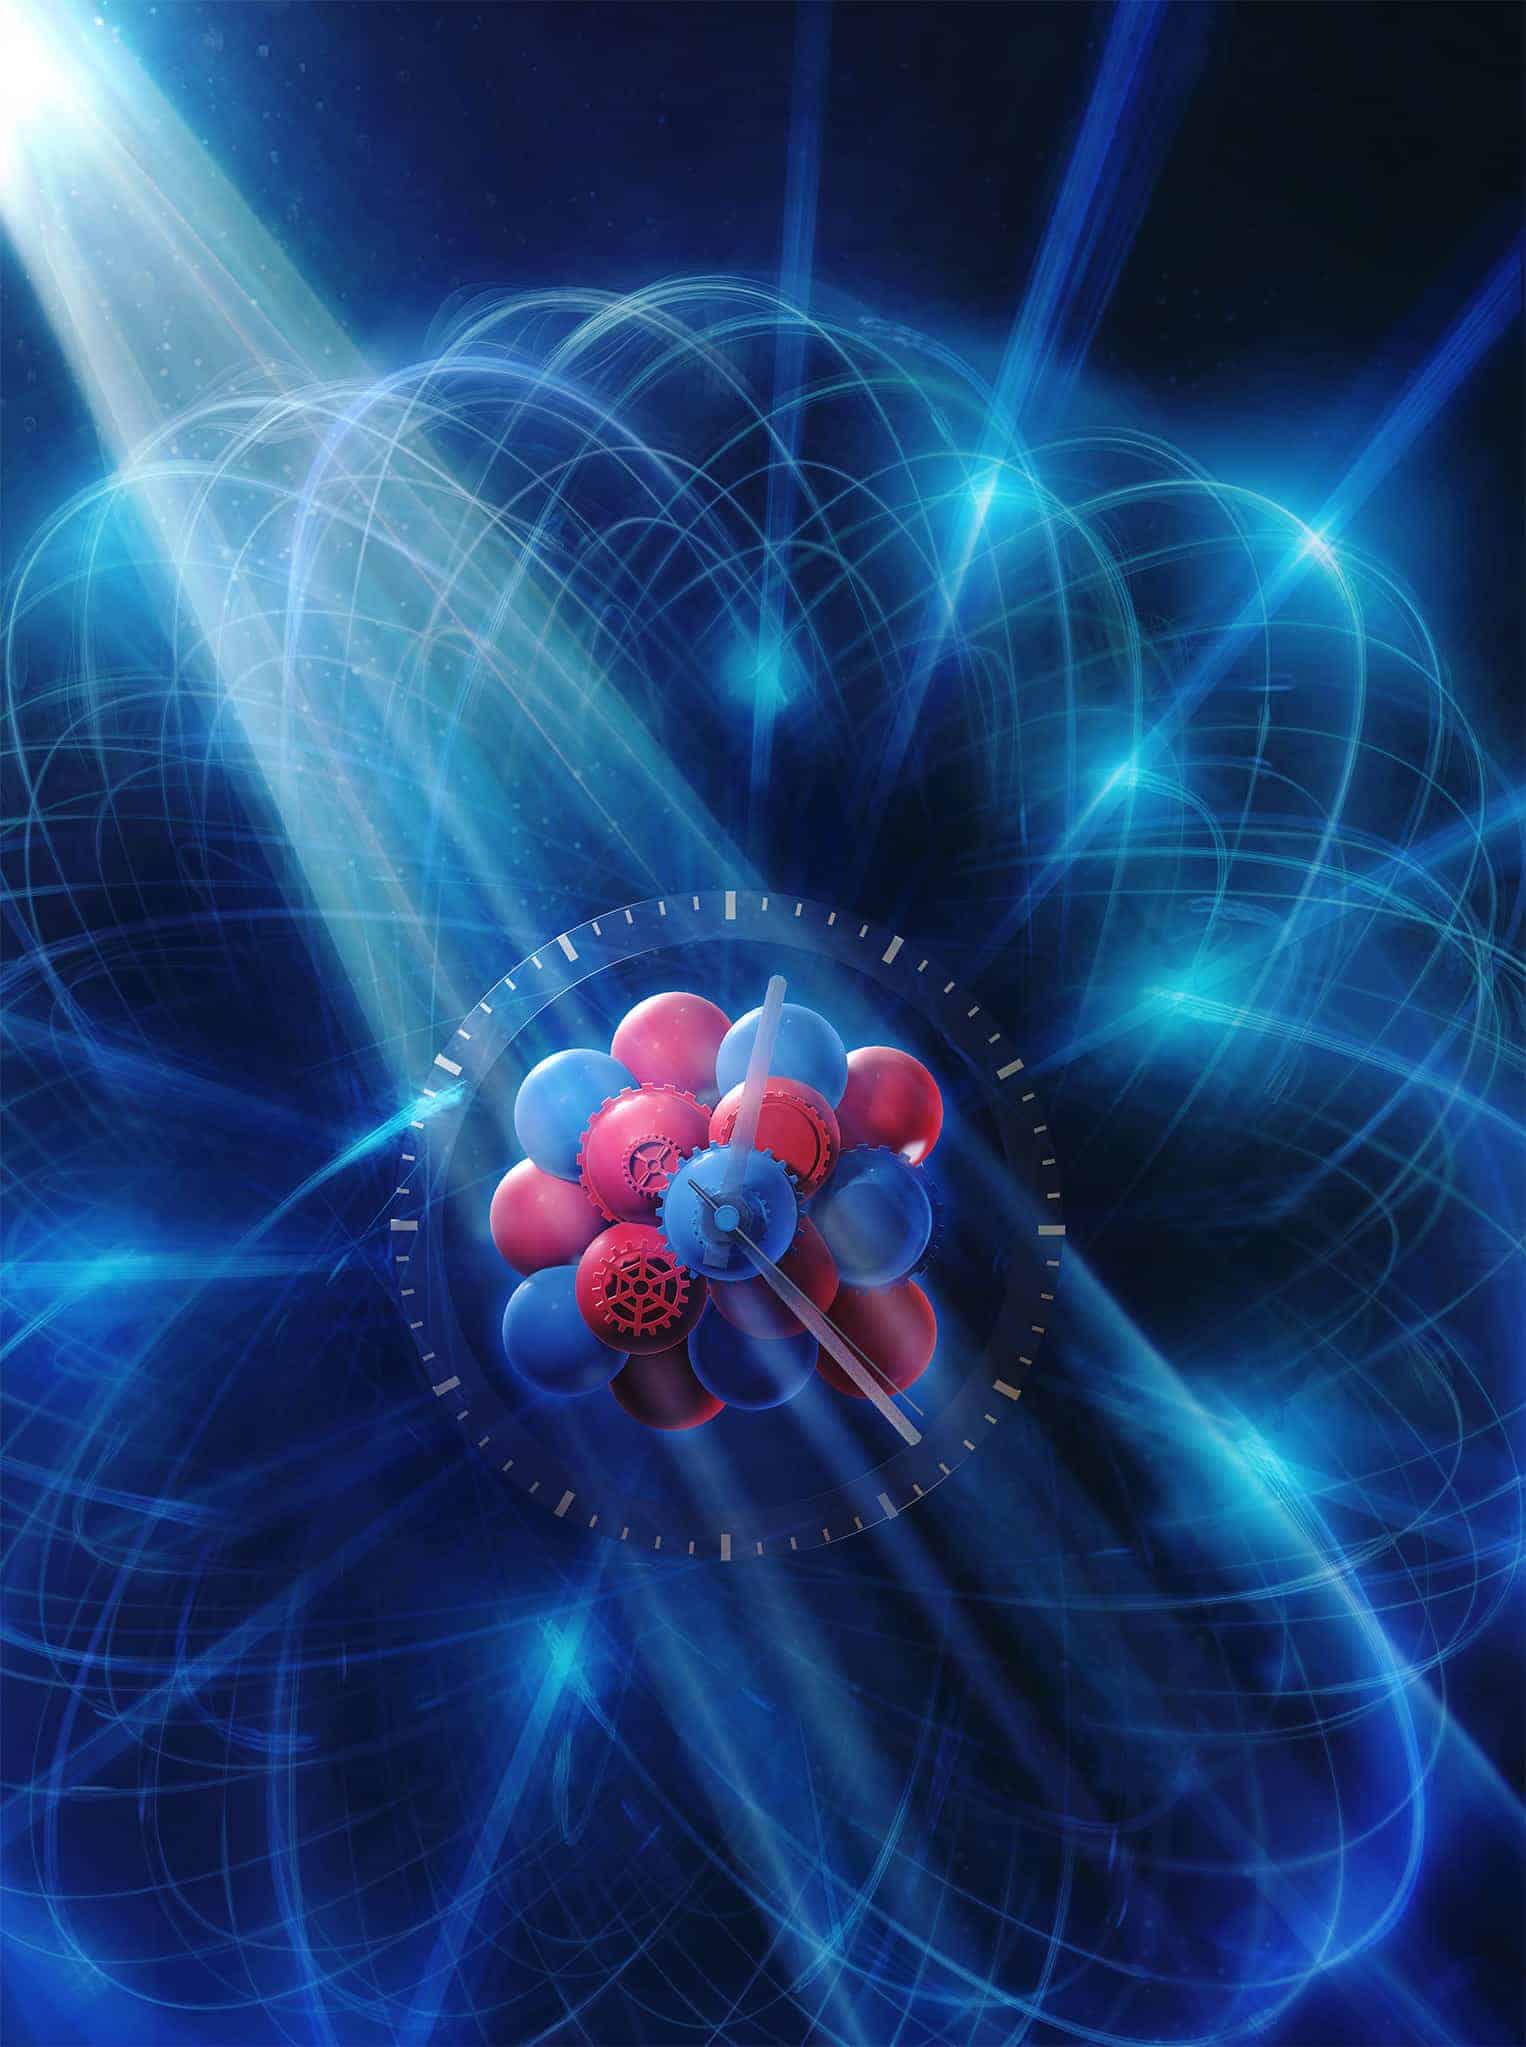 スカンジウム原子時計が3000億年に1秒の誤差と言う驚異的な精度を実現